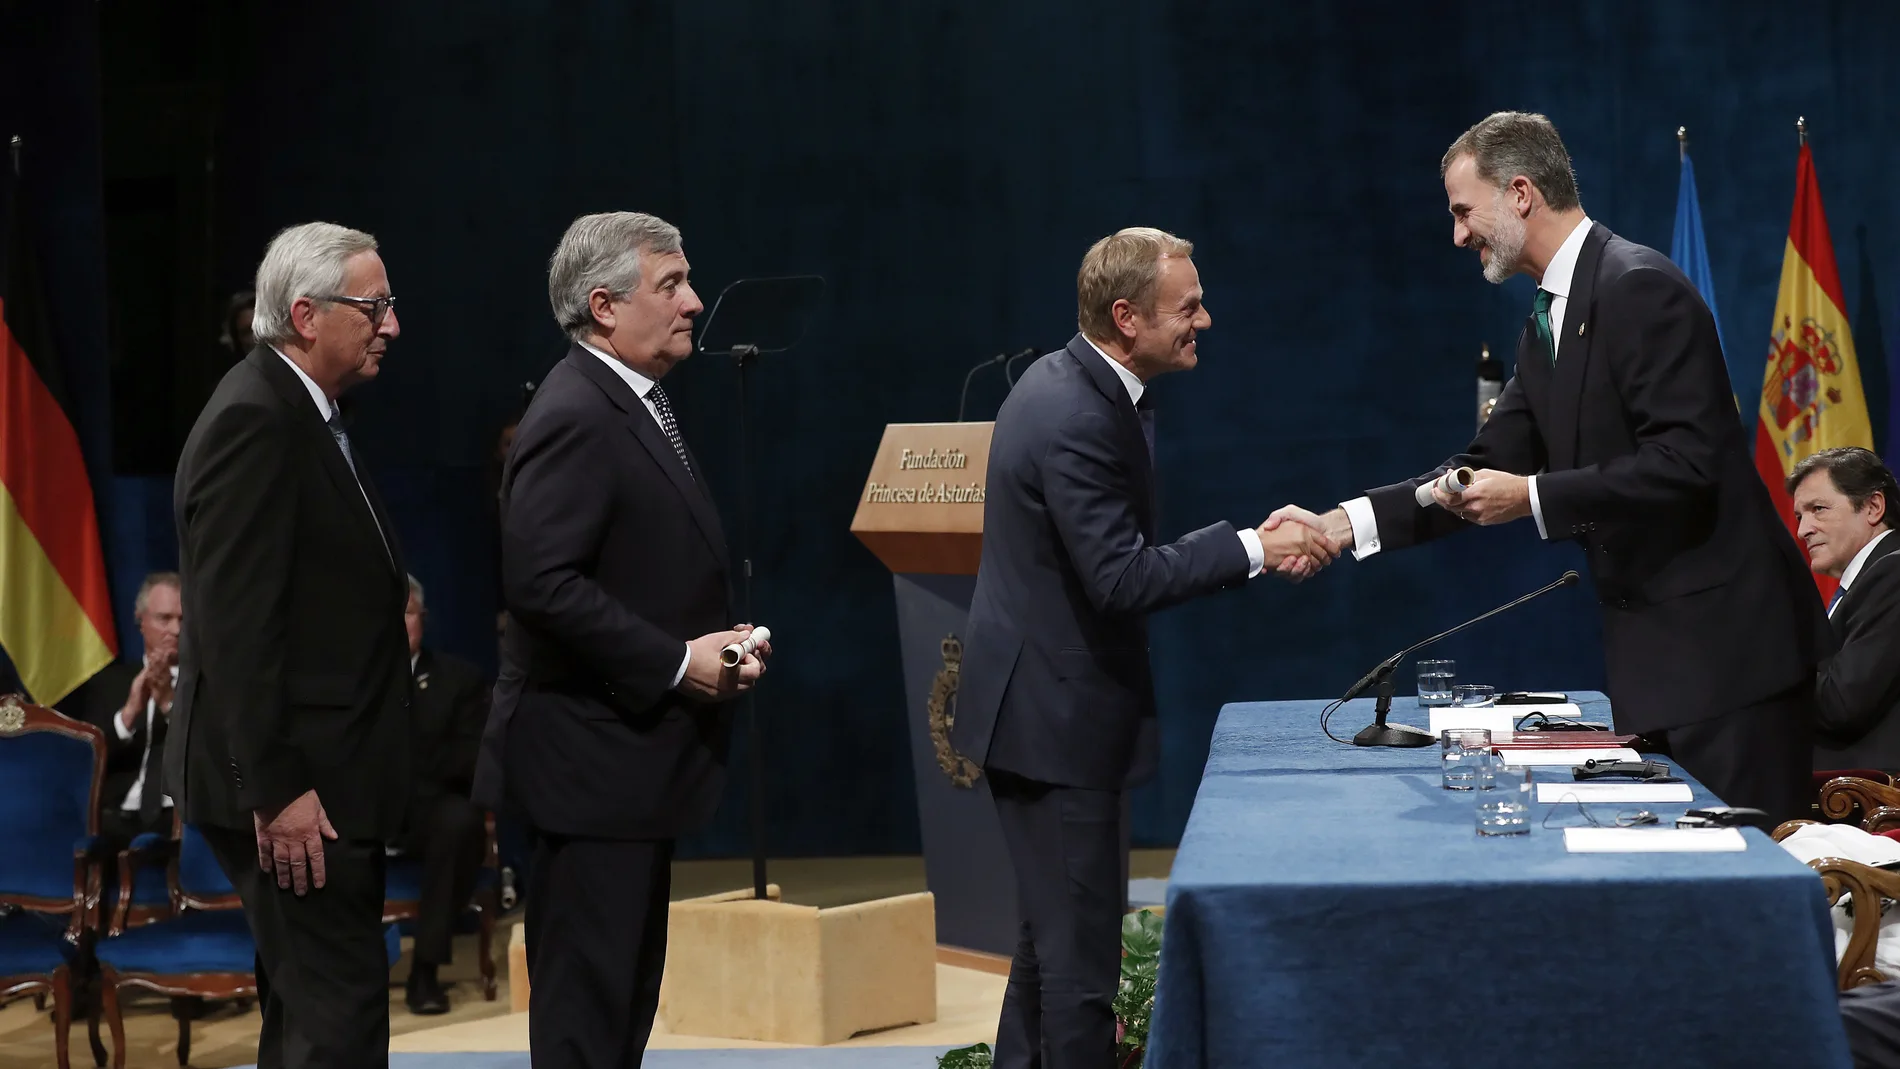 Premio Princesa de Asturias 2017 de la Concordia otorgado a la Unión Europea